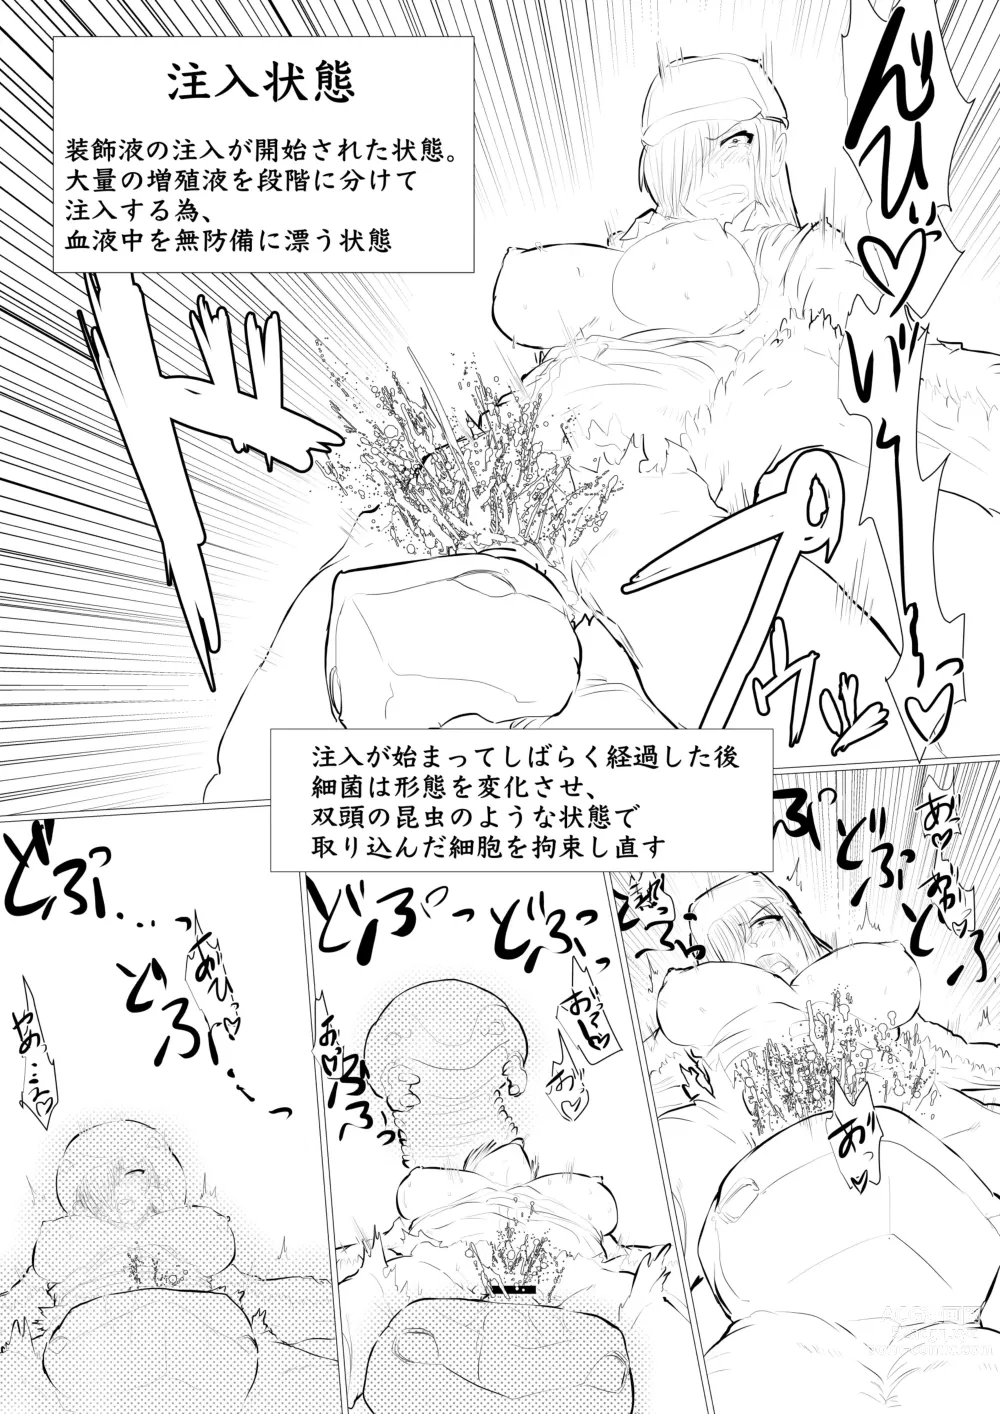 Page 37 of doujinshi Hakkekkyuu ga Byougen-sei-han Saikin ni Nabura Rerutsu!